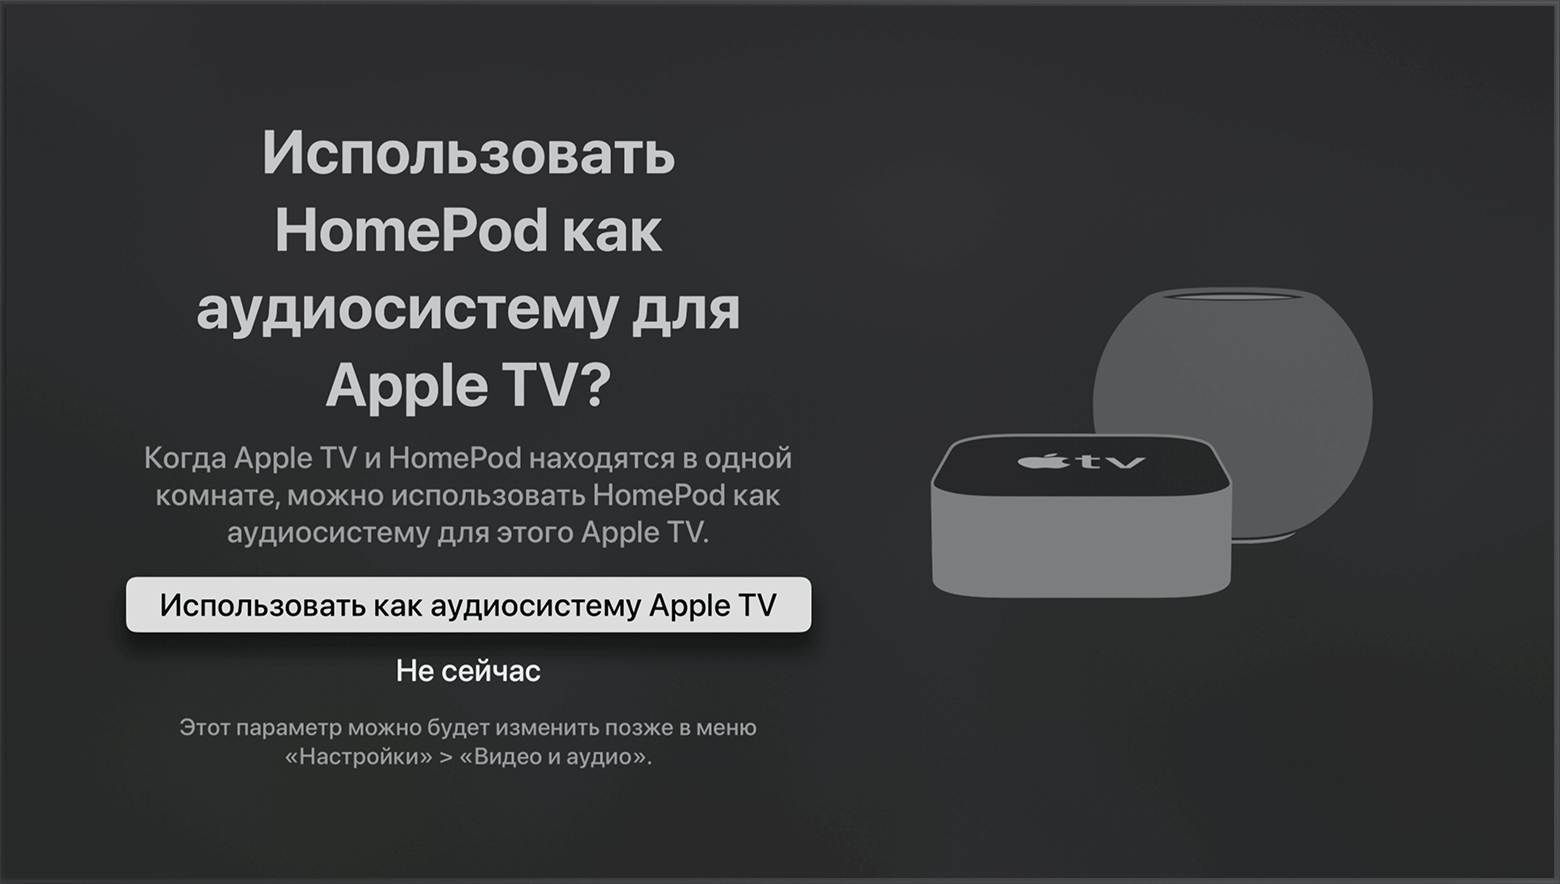 Снимок экрана tvOS с запросом на использование колонок HomePod как аудиосистемы для Apple TV.